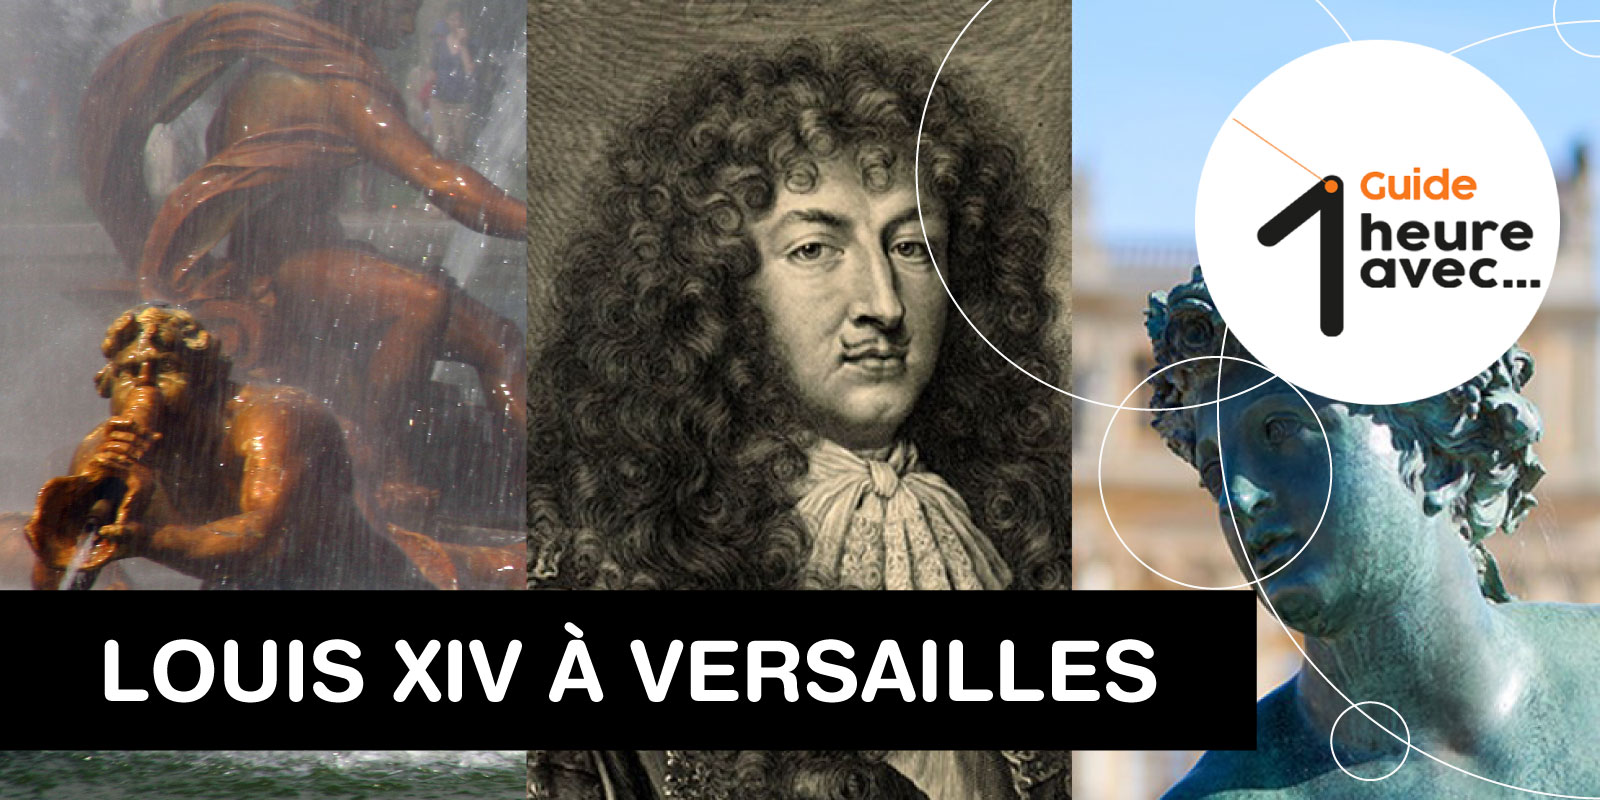 Bannière inscription 1 heure avec Louis XIV à Versailles